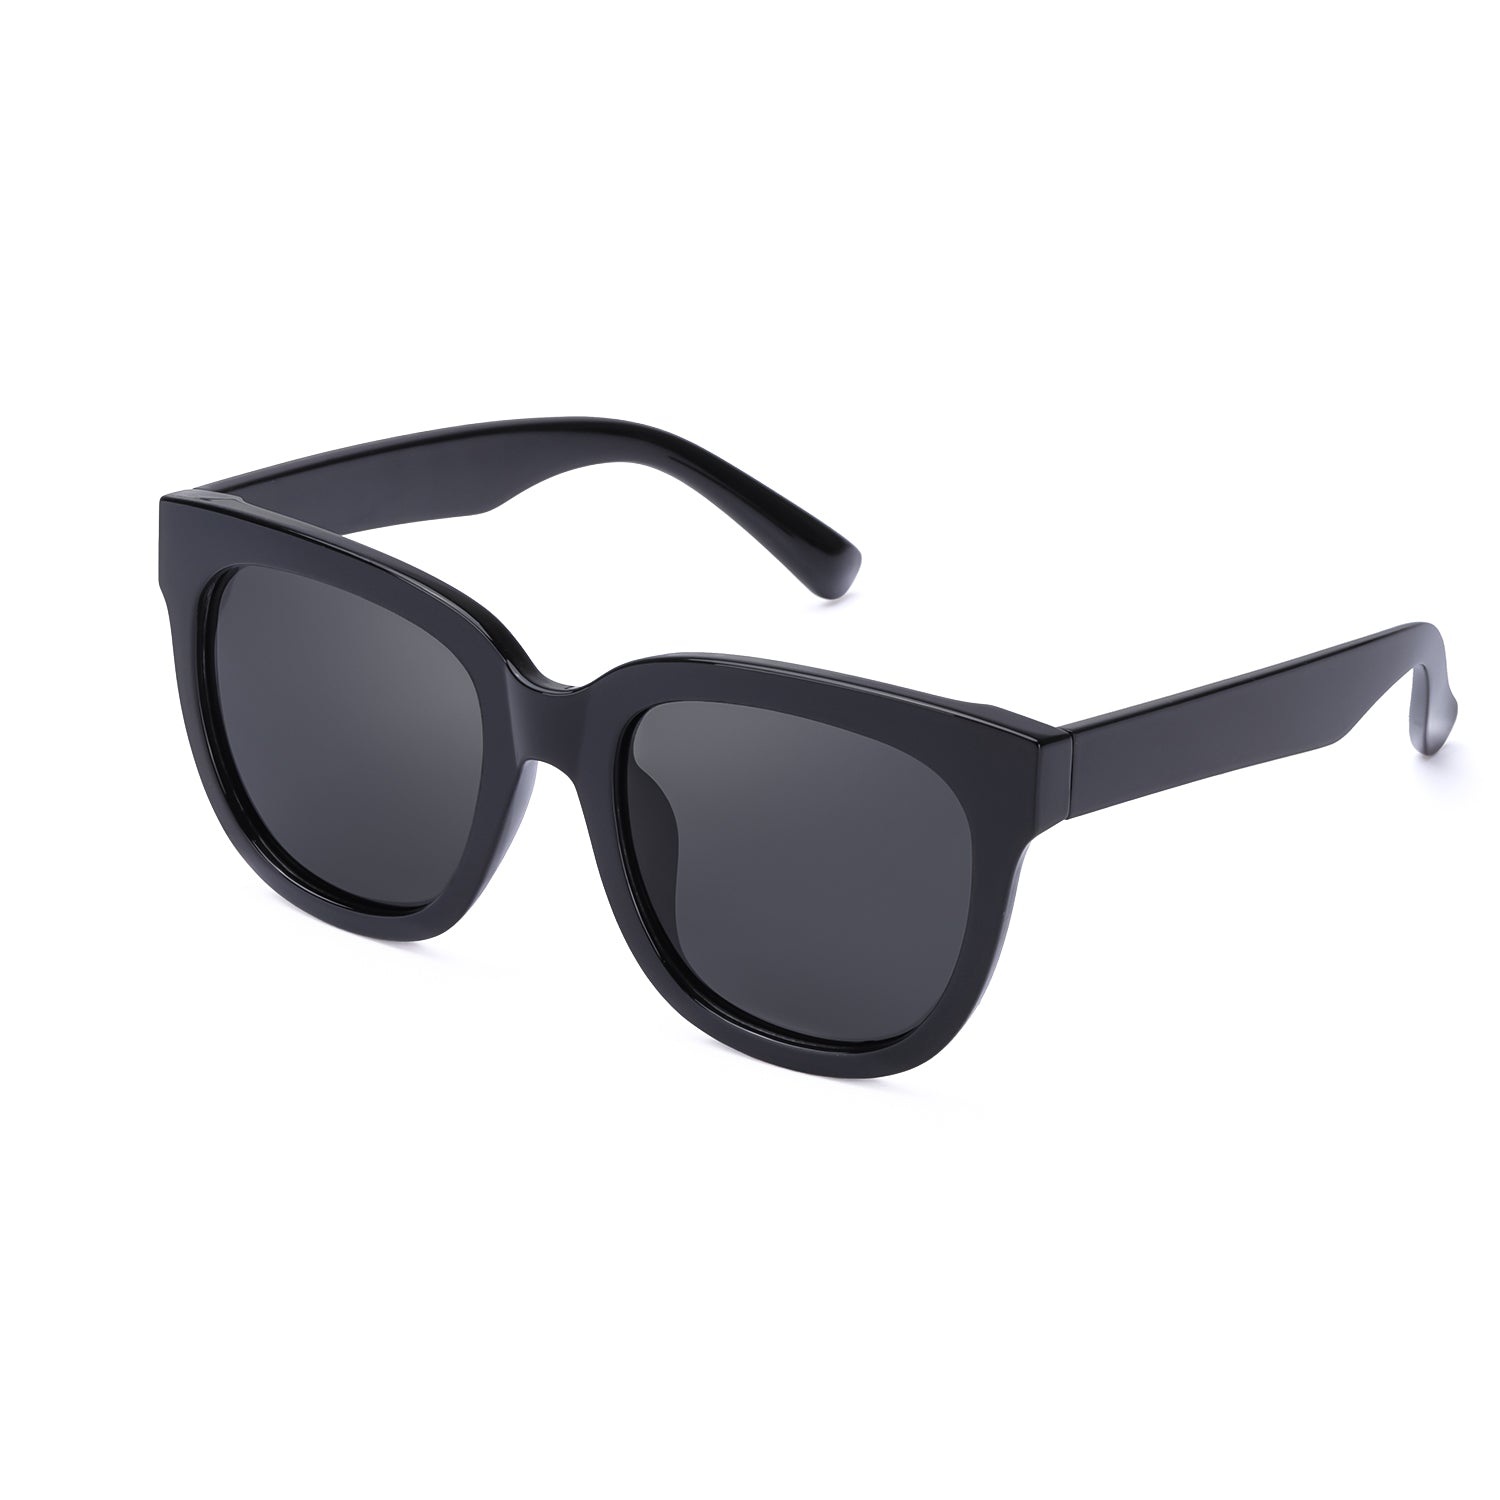 100% UVA UVB Protection Sunglasses White  Sunglasses, Sunglasses women,  Fashion tips